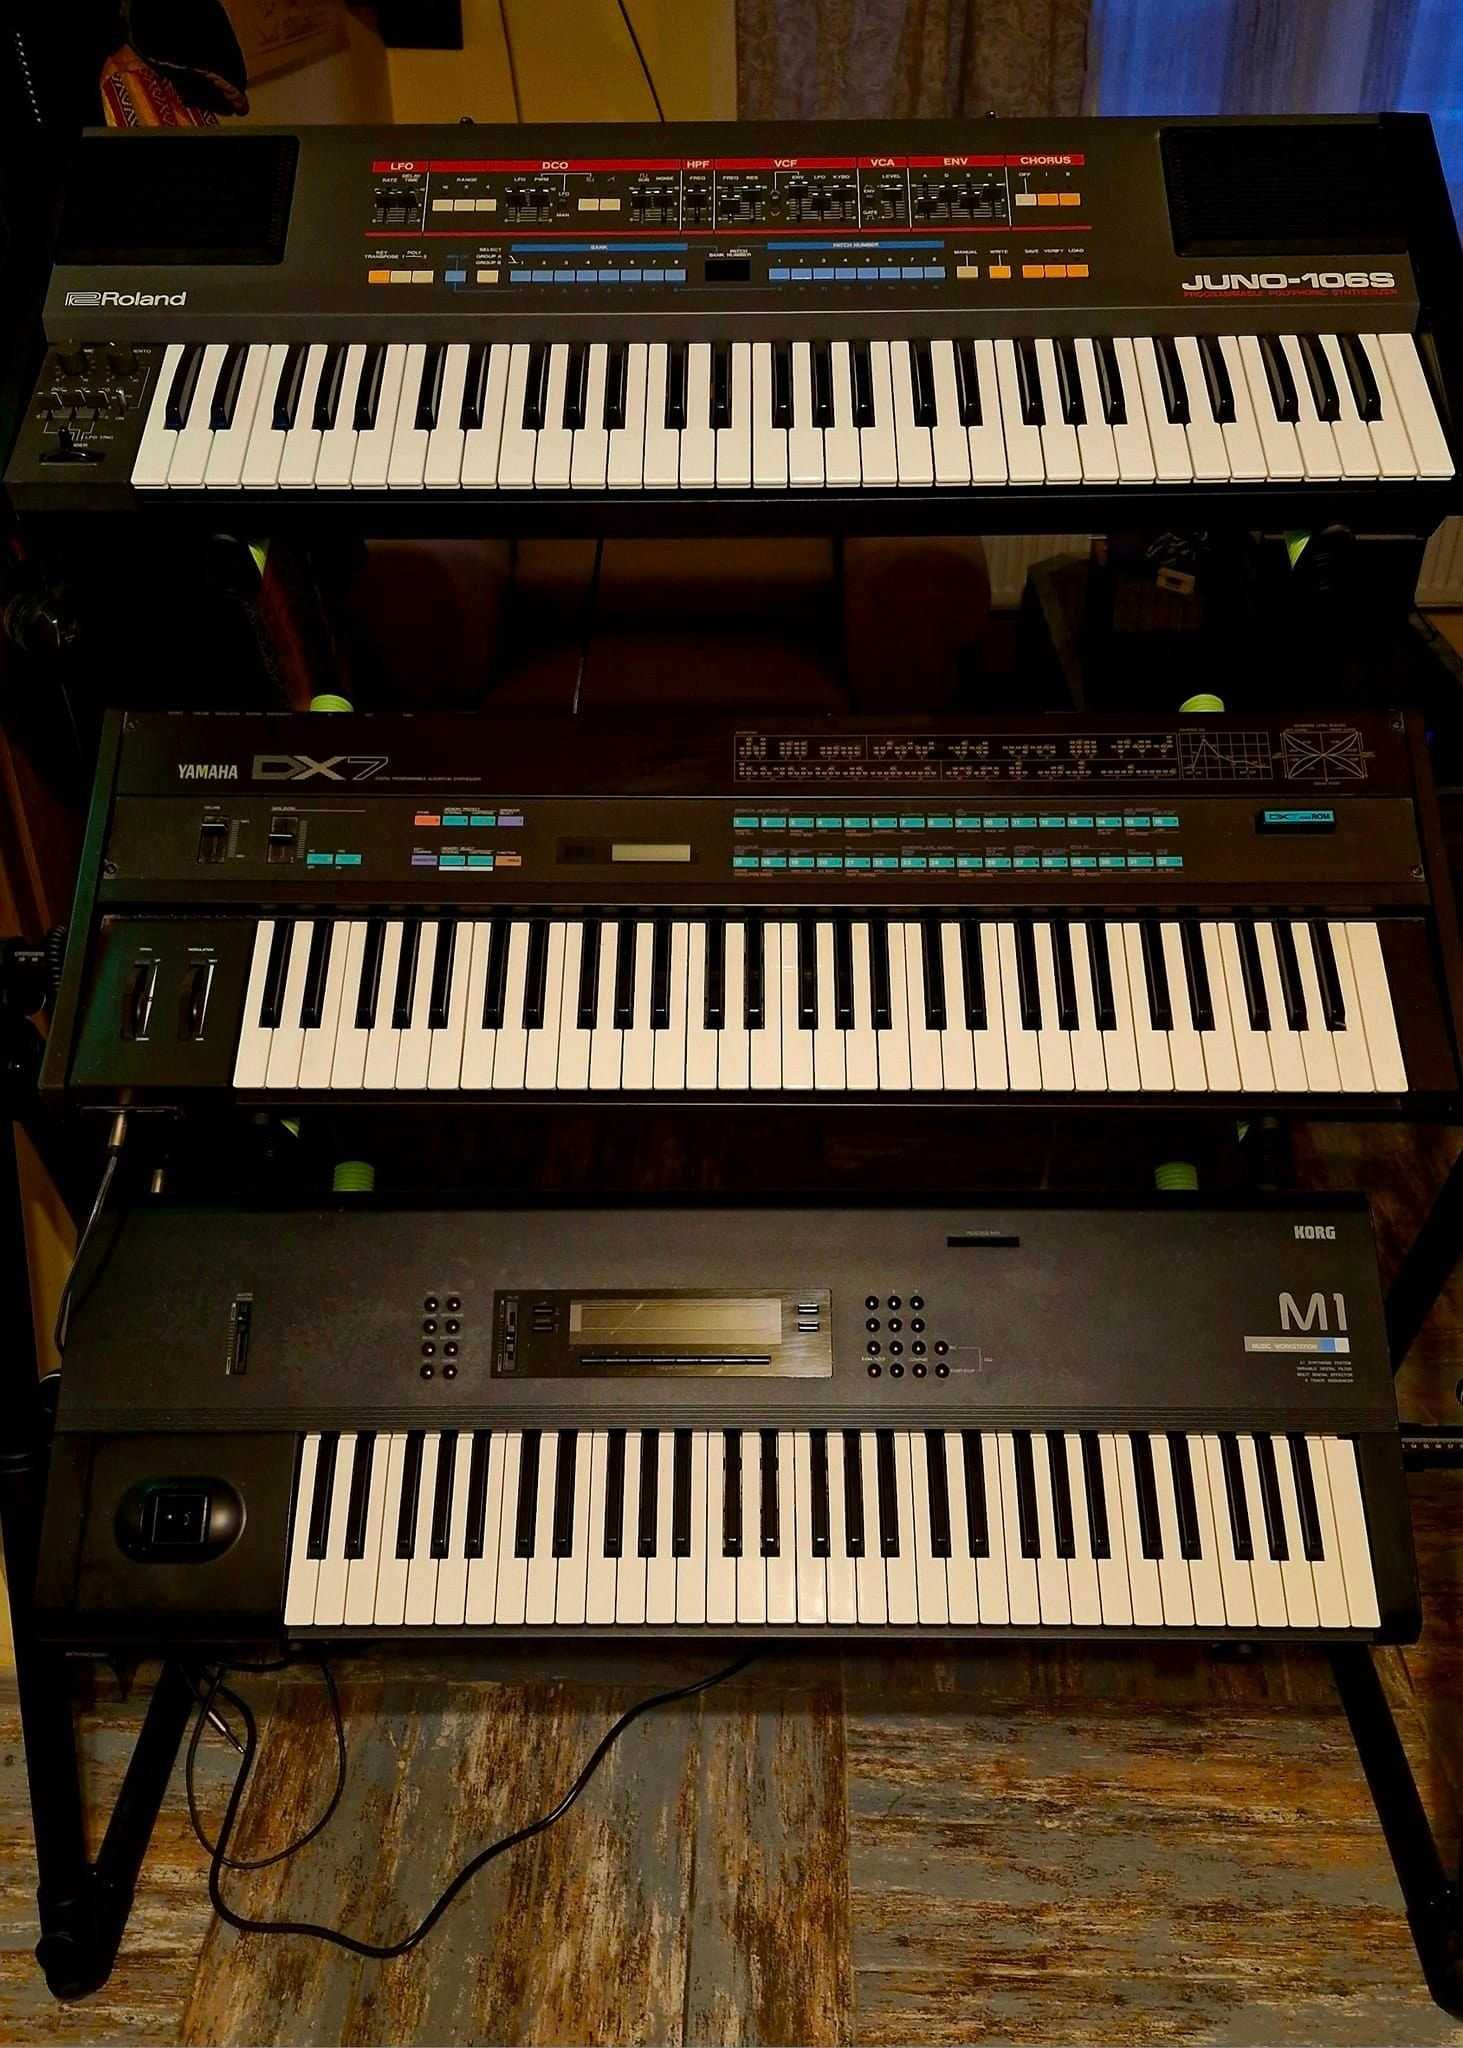 Roland Juno 106S, Yamaha DX7, Korg M1